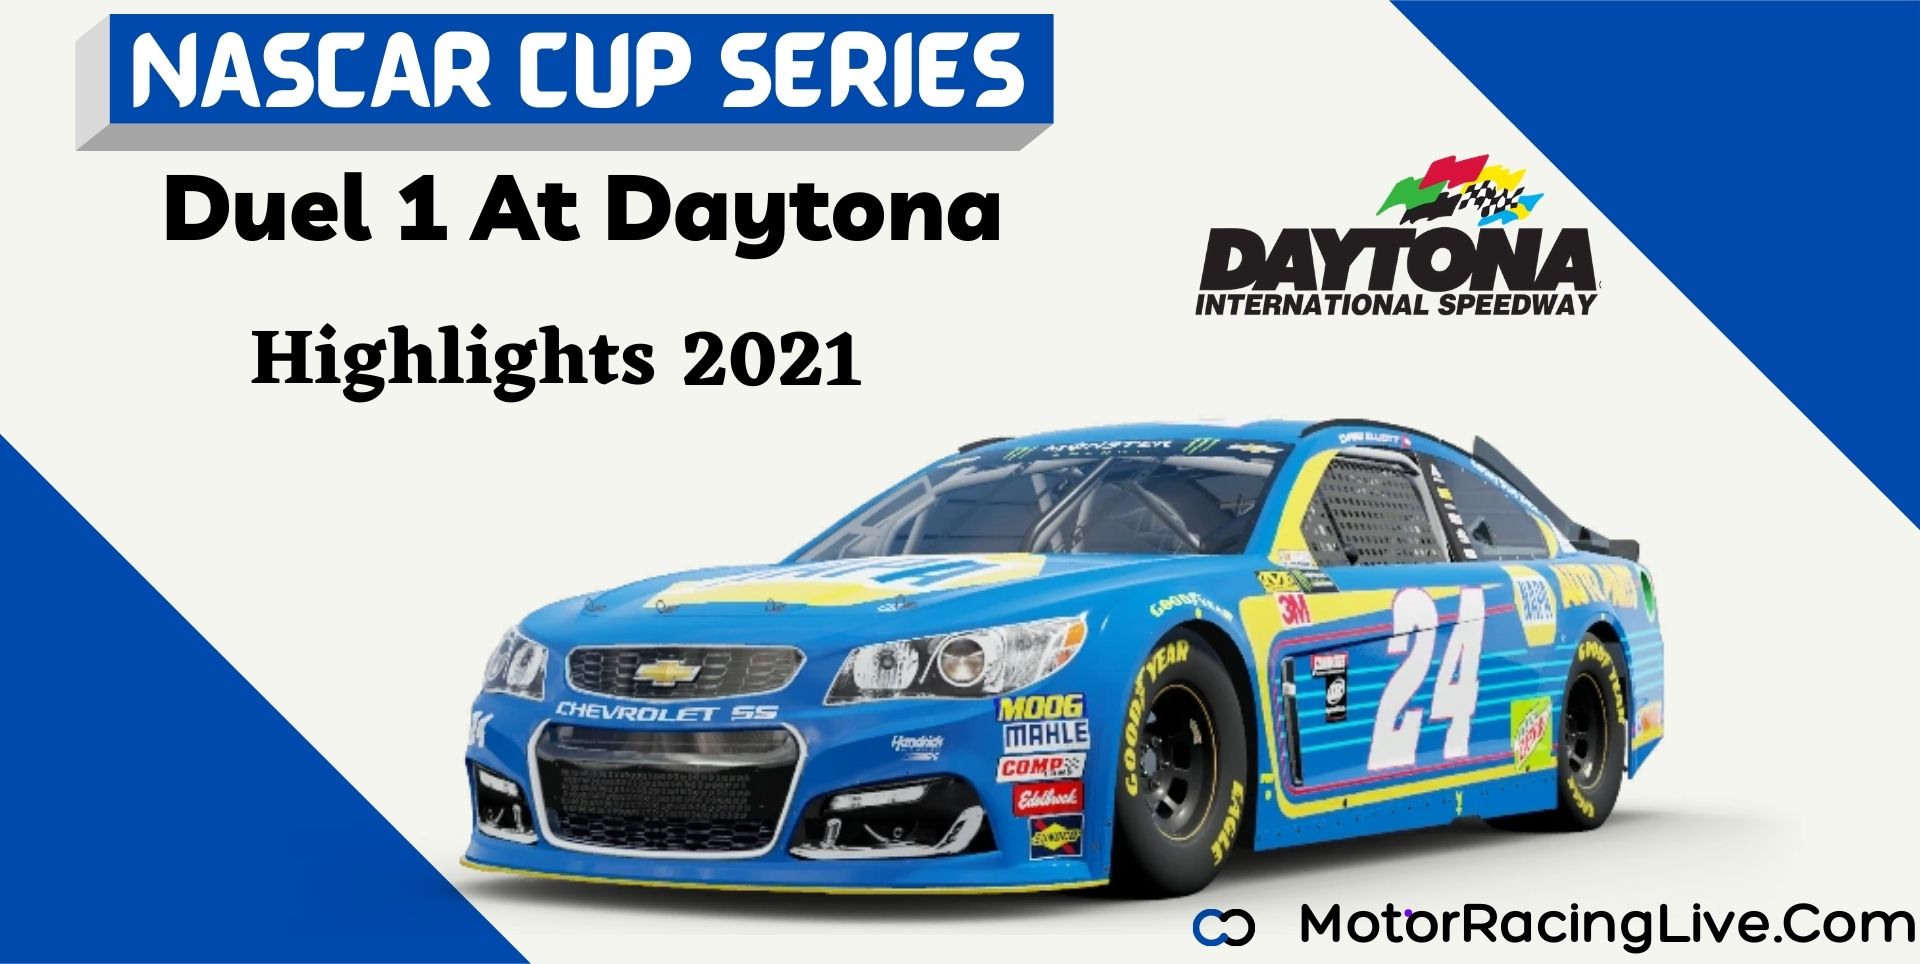 Duel 1 At Daytona Highlights 2021 NASCAR Cup Series